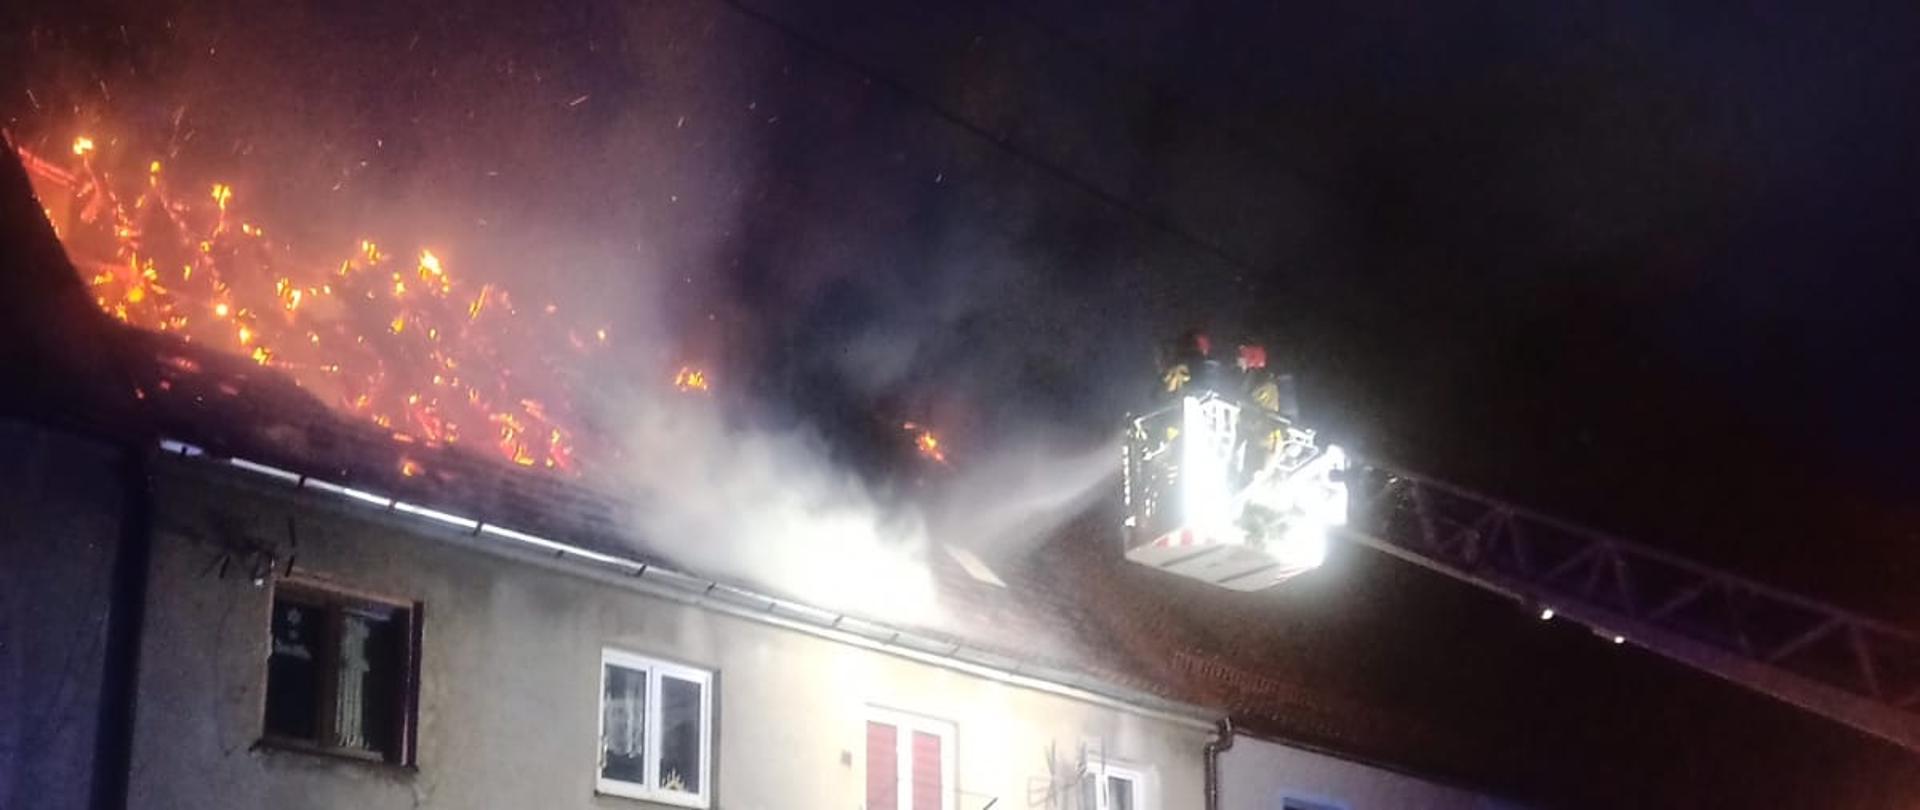 Strażacy gaszą wodą z działka drabiny mechanicznej pożar dachu w budynku mieszkalnym wielorodzinnym